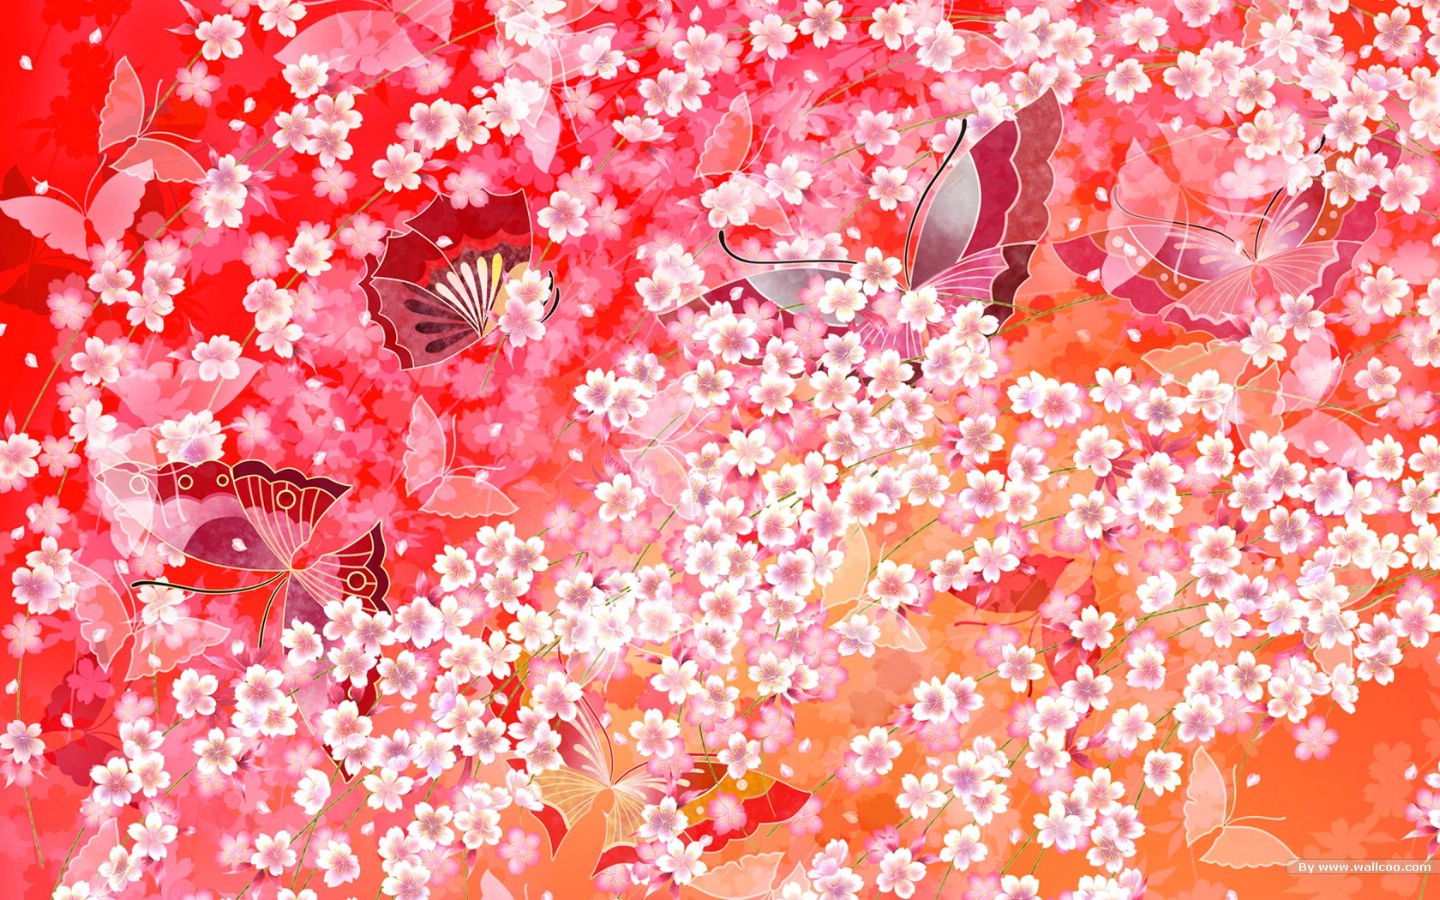 壁纸1440x900日本风格色彩与图案设计壁纸壁纸 日本风格色彩与图案设计壁纸壁纸 日本风格色彩与图案设计壁纸图片 日本风格色彩与图案设计壁纸素材 创意壁纸 创意图库 创意图片素材桌面壁纸